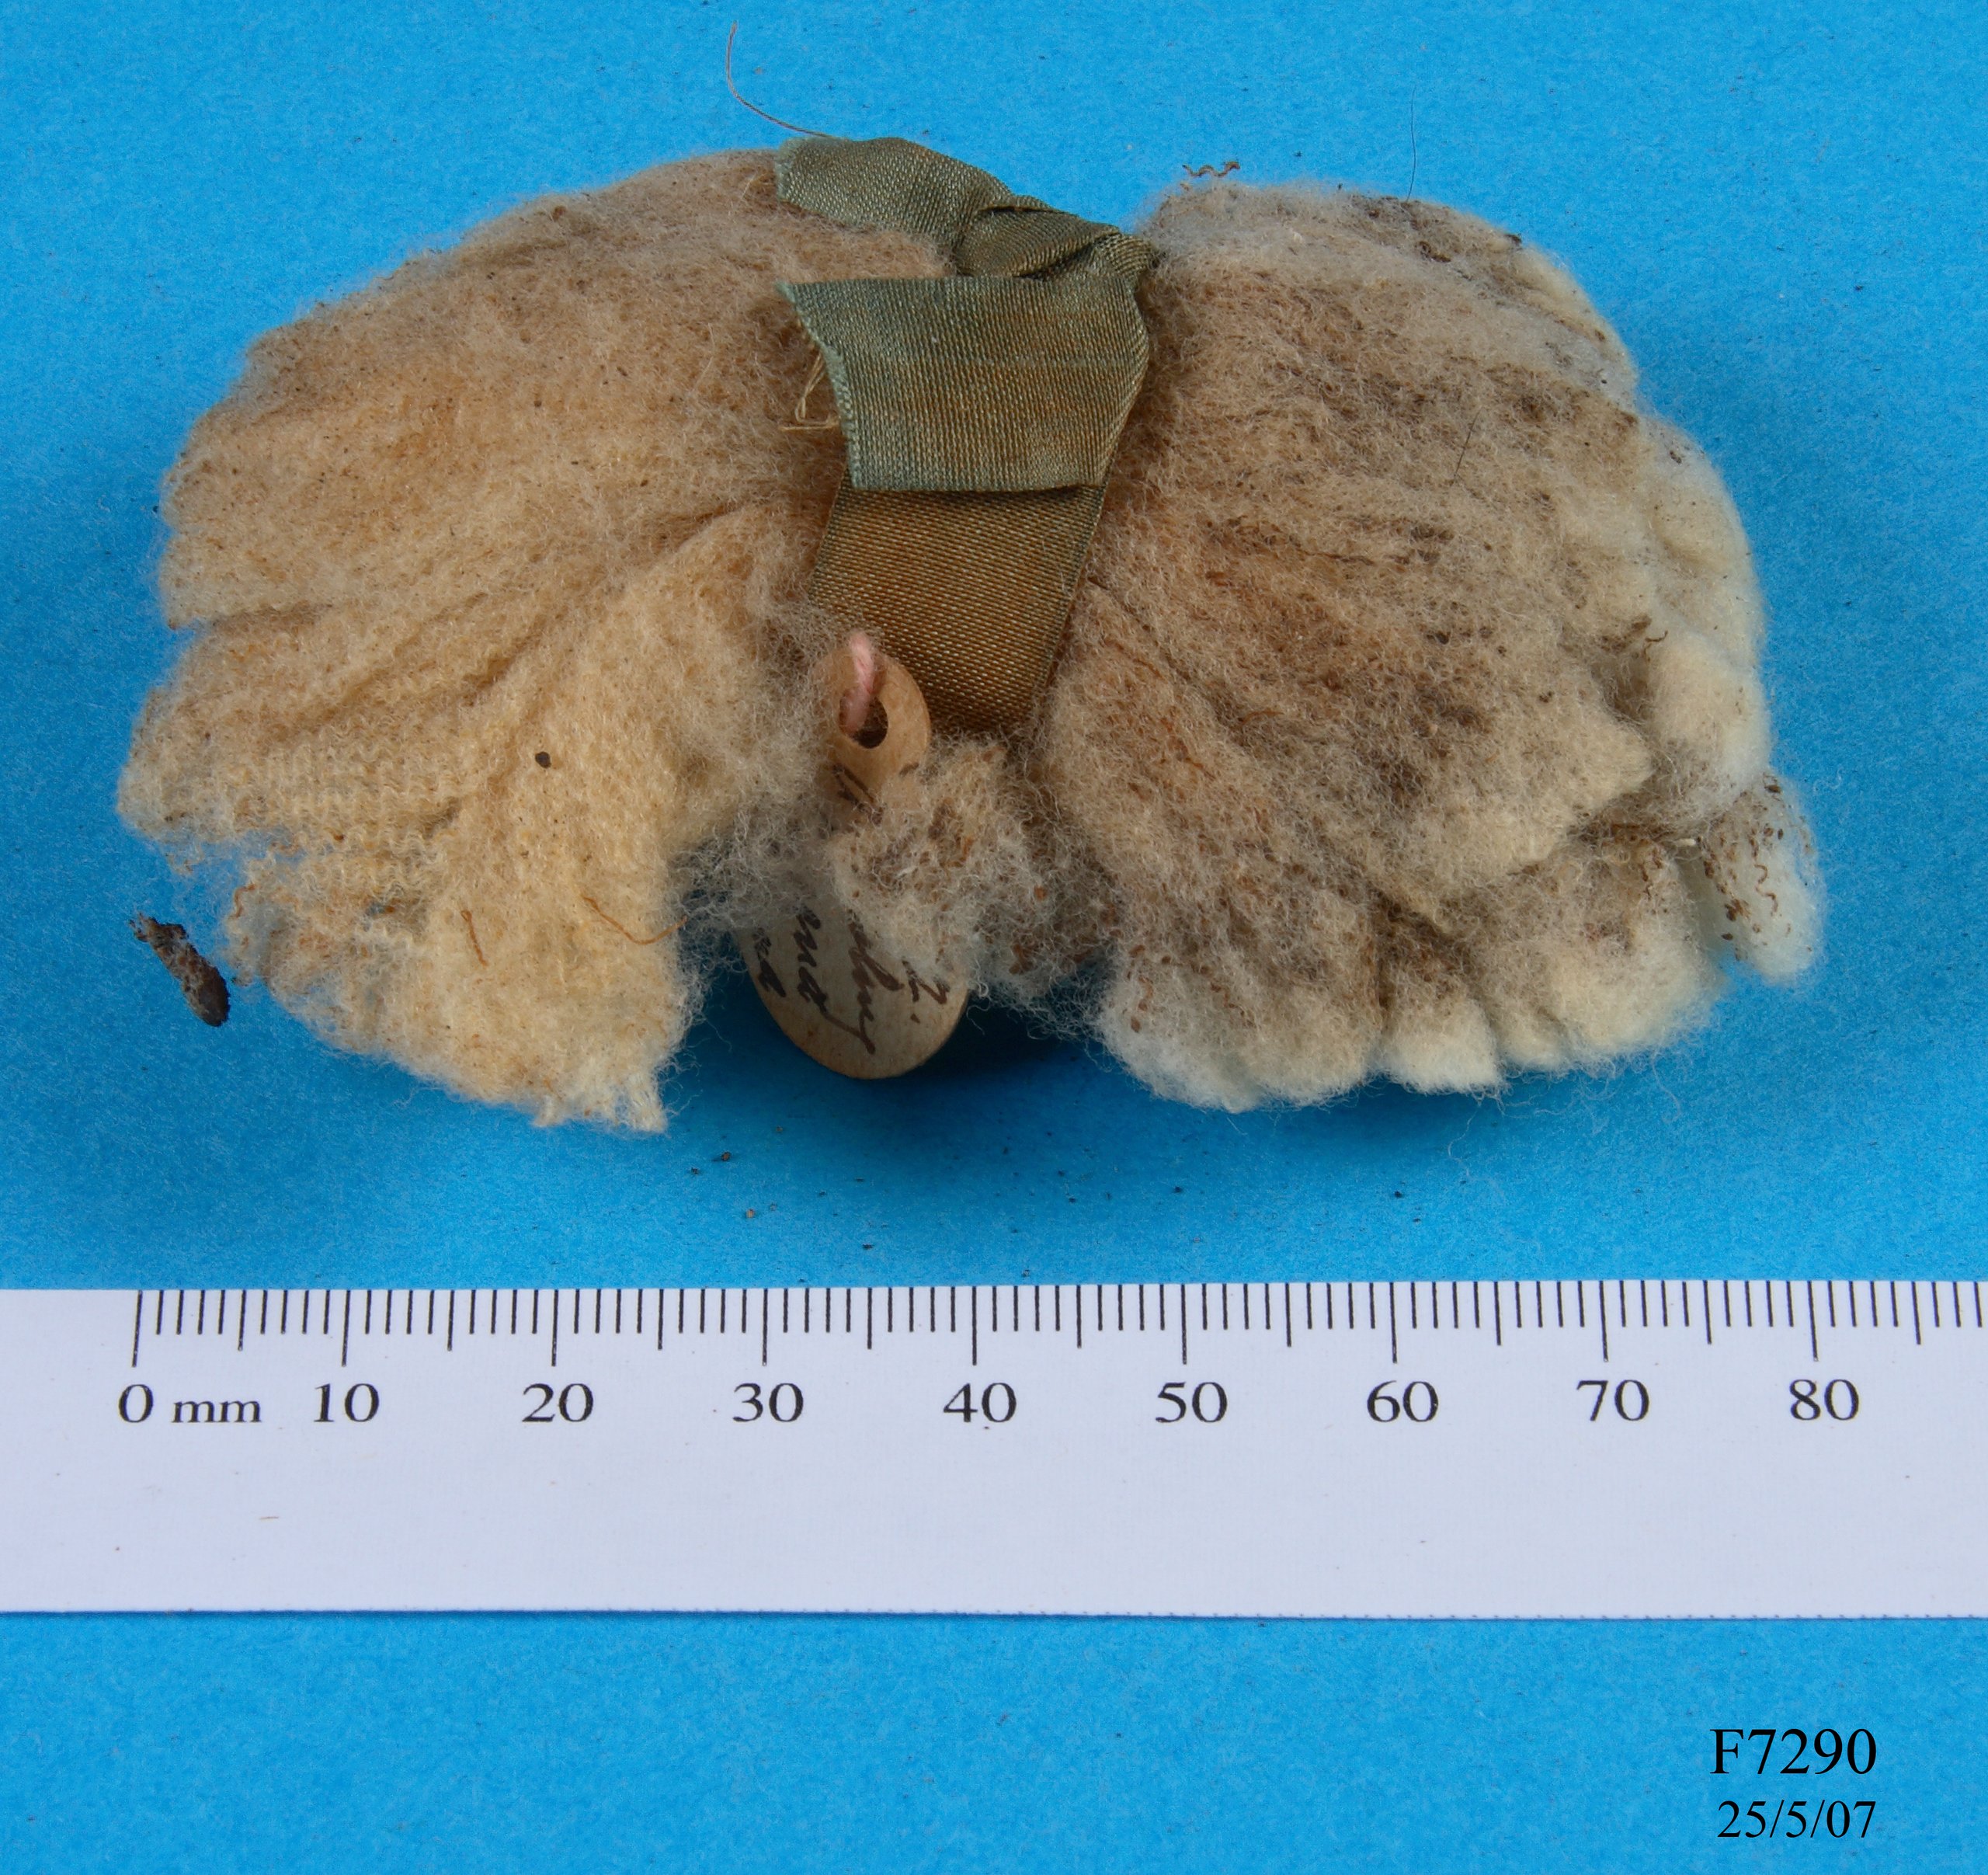 Wool specimen from a stud ewe